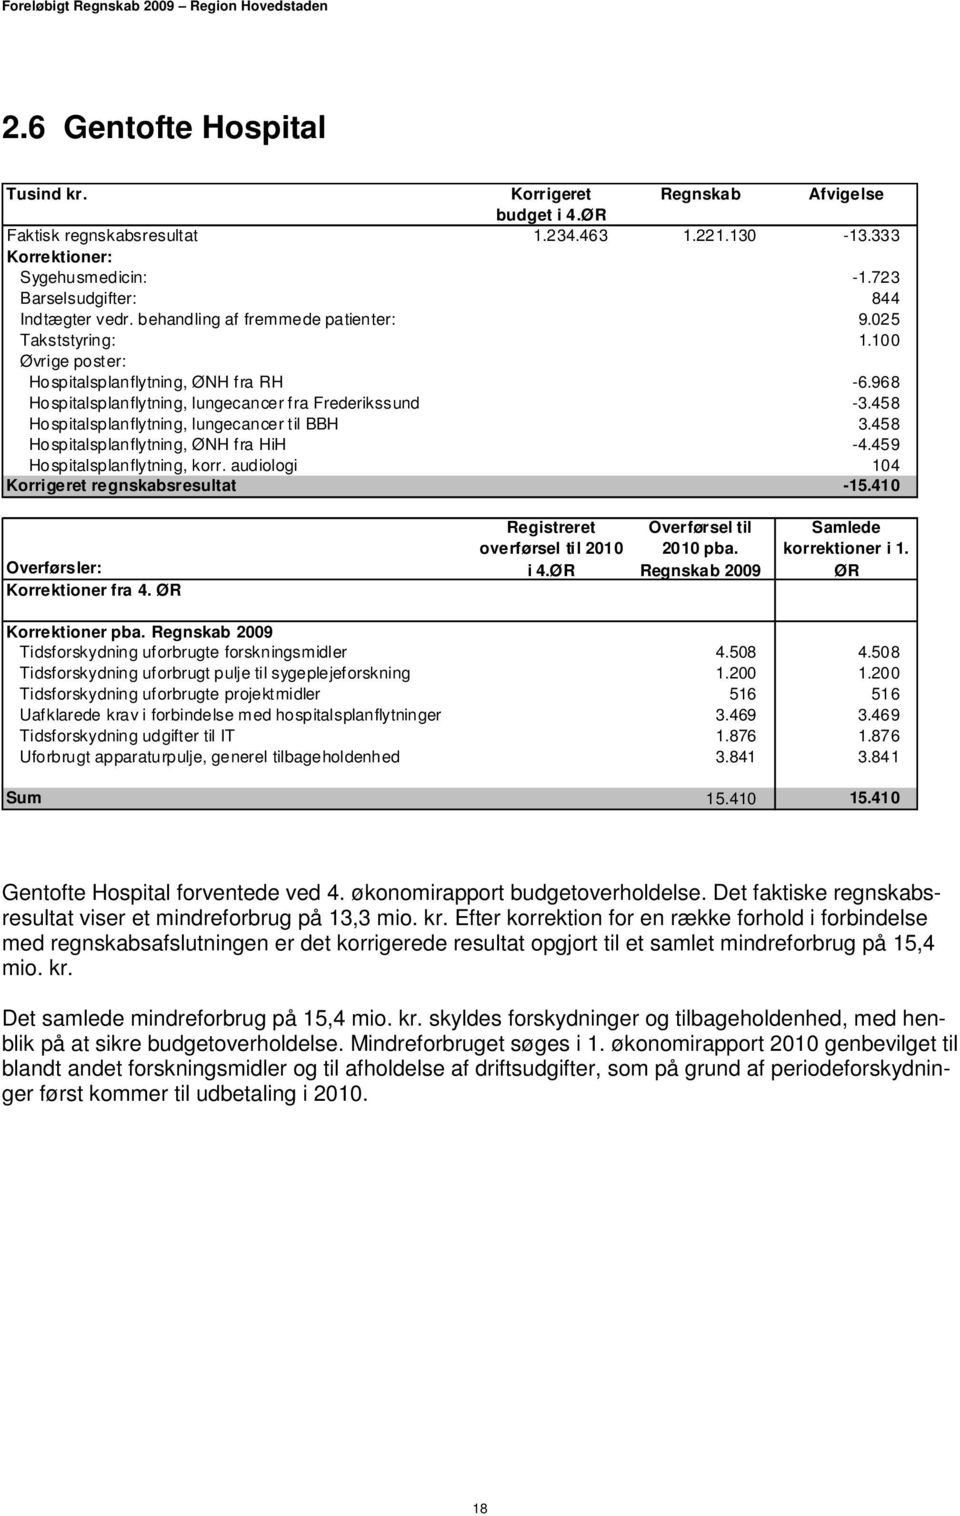 458 Hospitalsplanflytning, ØNH fra HiH -4.459 Hospitalsplanflytning, korr. audiologi 104 Korrigeret regnskabsresultat -15.410 Overførsler: Korrektioner fra 4. ØR Registreret overførsel til 2010 i 4.